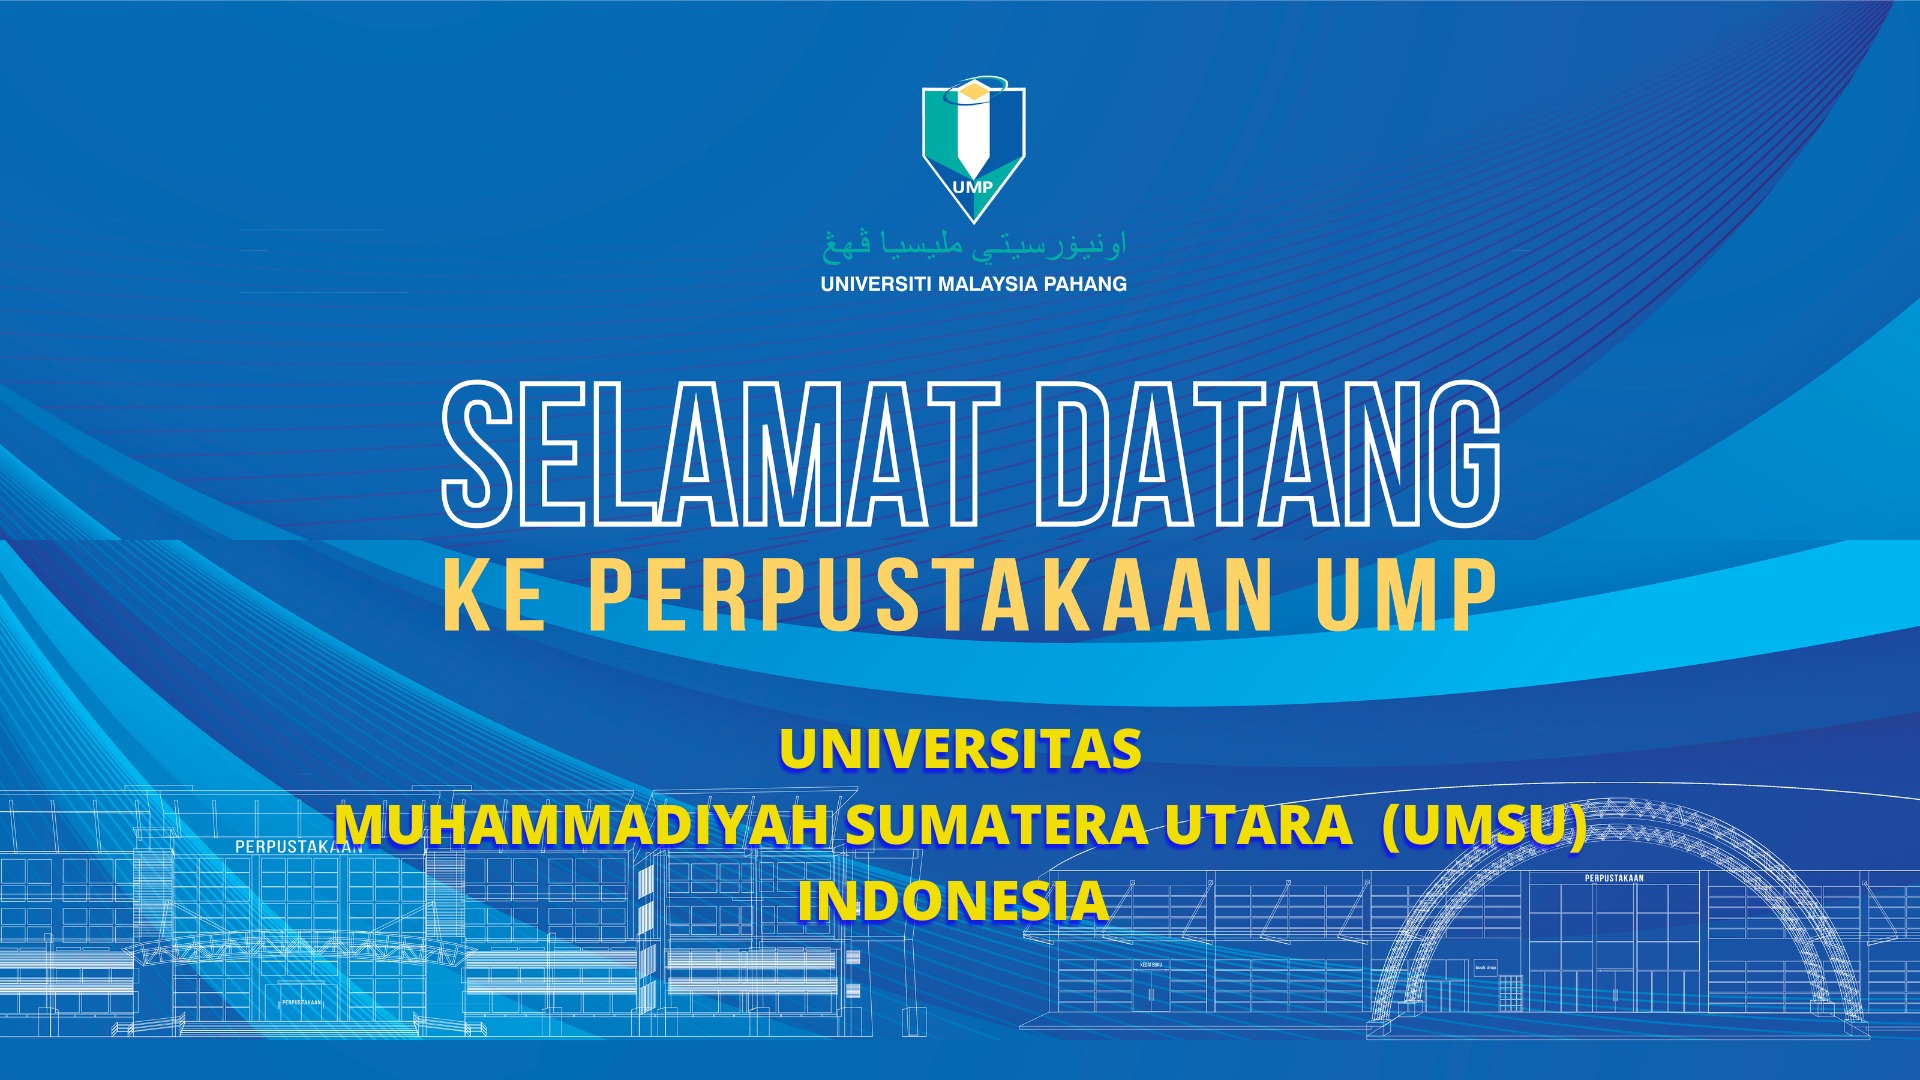 UMPLib - Lawatan Dari Universitas Muhamadiah Sumatera Utara (UMSU), Indonesia ke Perpustakaan UMP Pekan